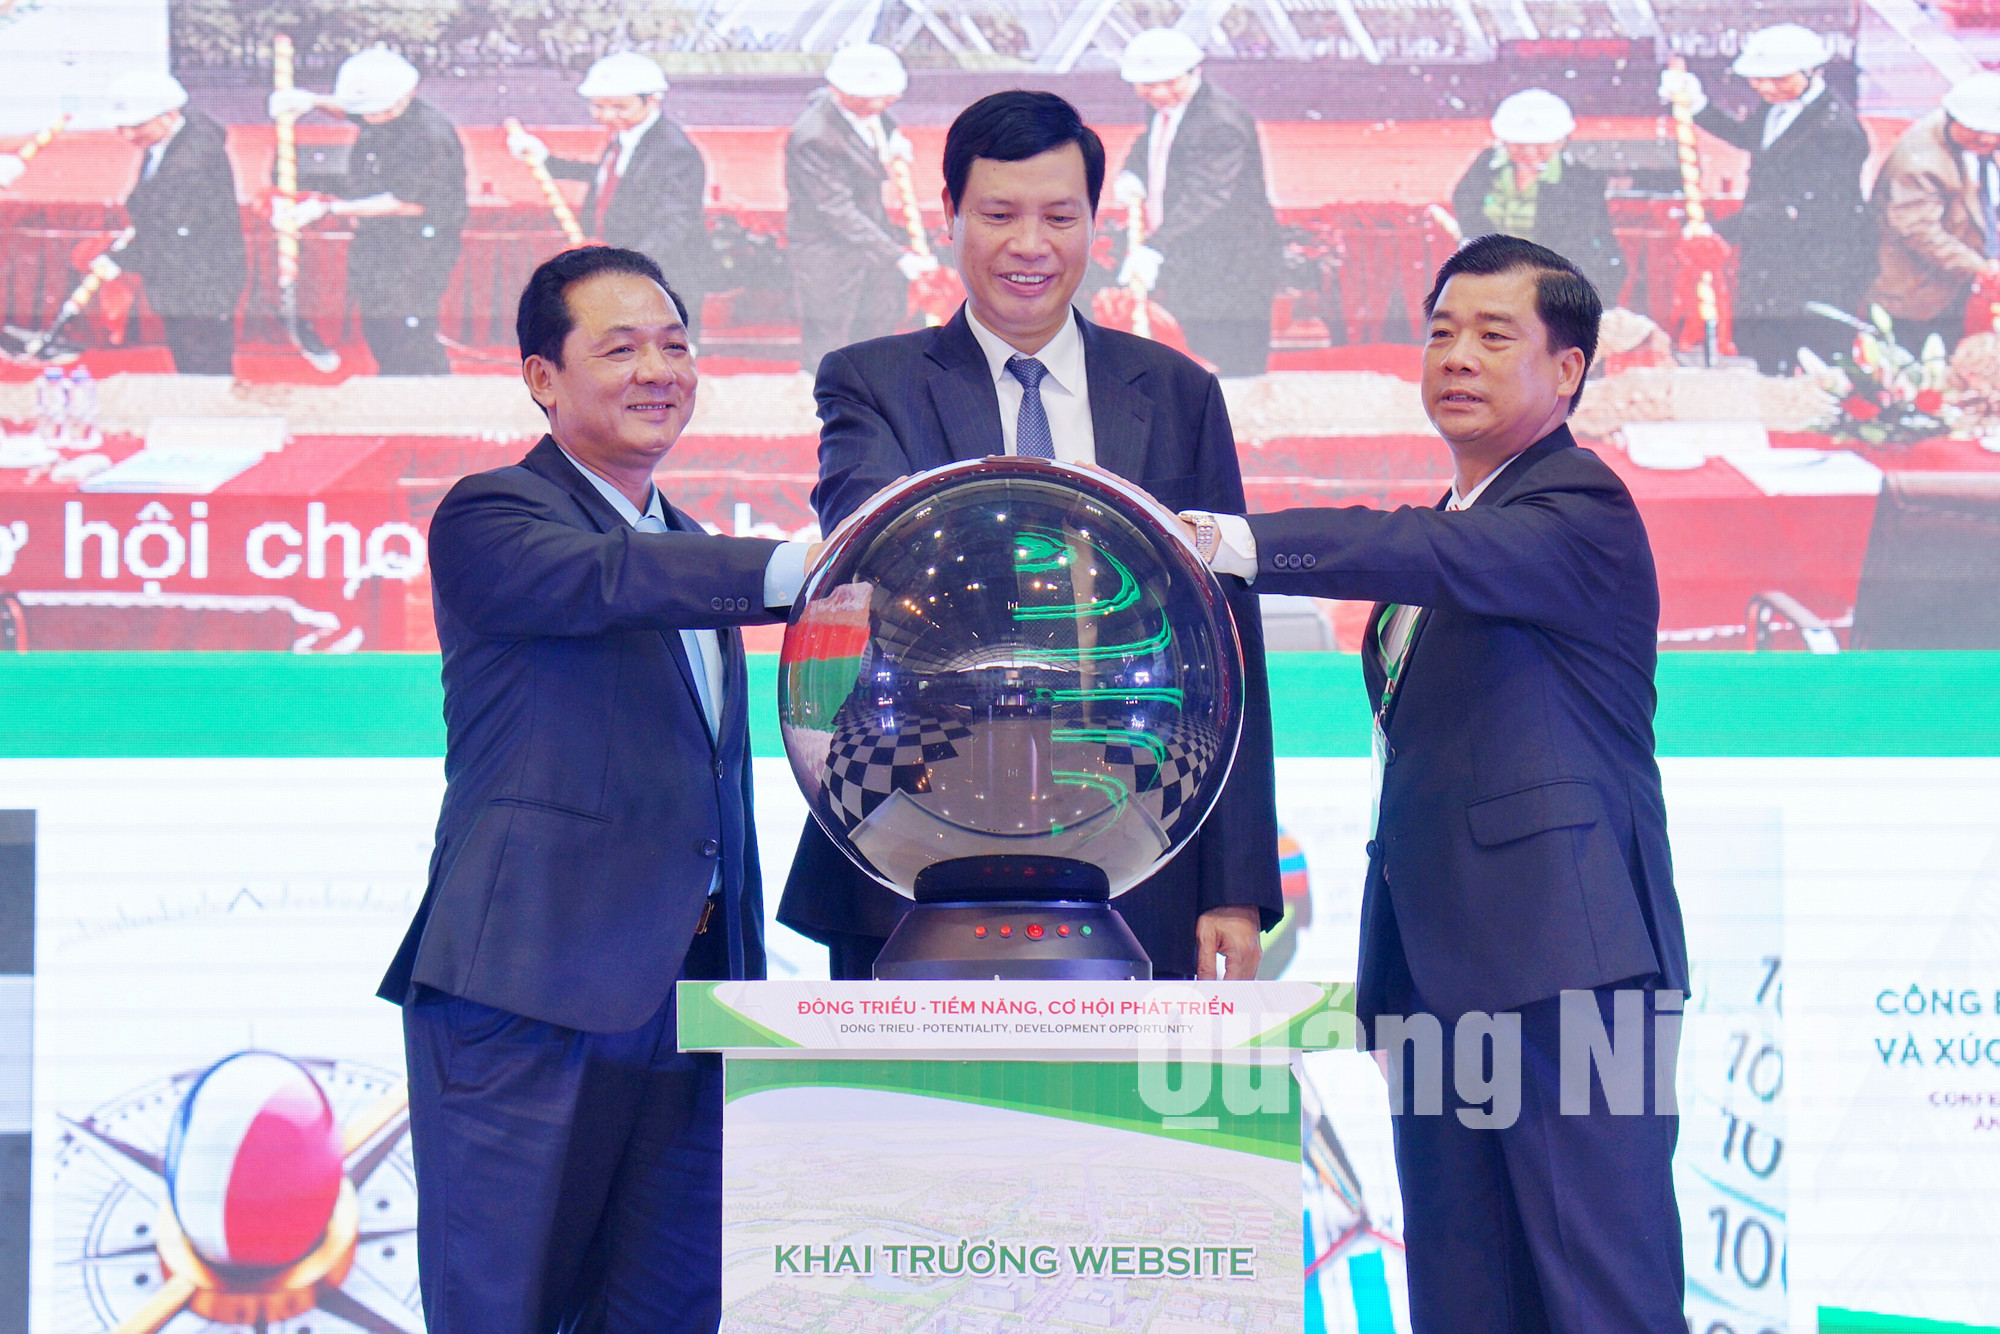 Chủ tịch UBND tỉnh Nguyễn Đức Long và lãnh đạo TX Đông Triều khai trương trang thông tin điện tử xúc tiến đầu tư của TX Đông Triều